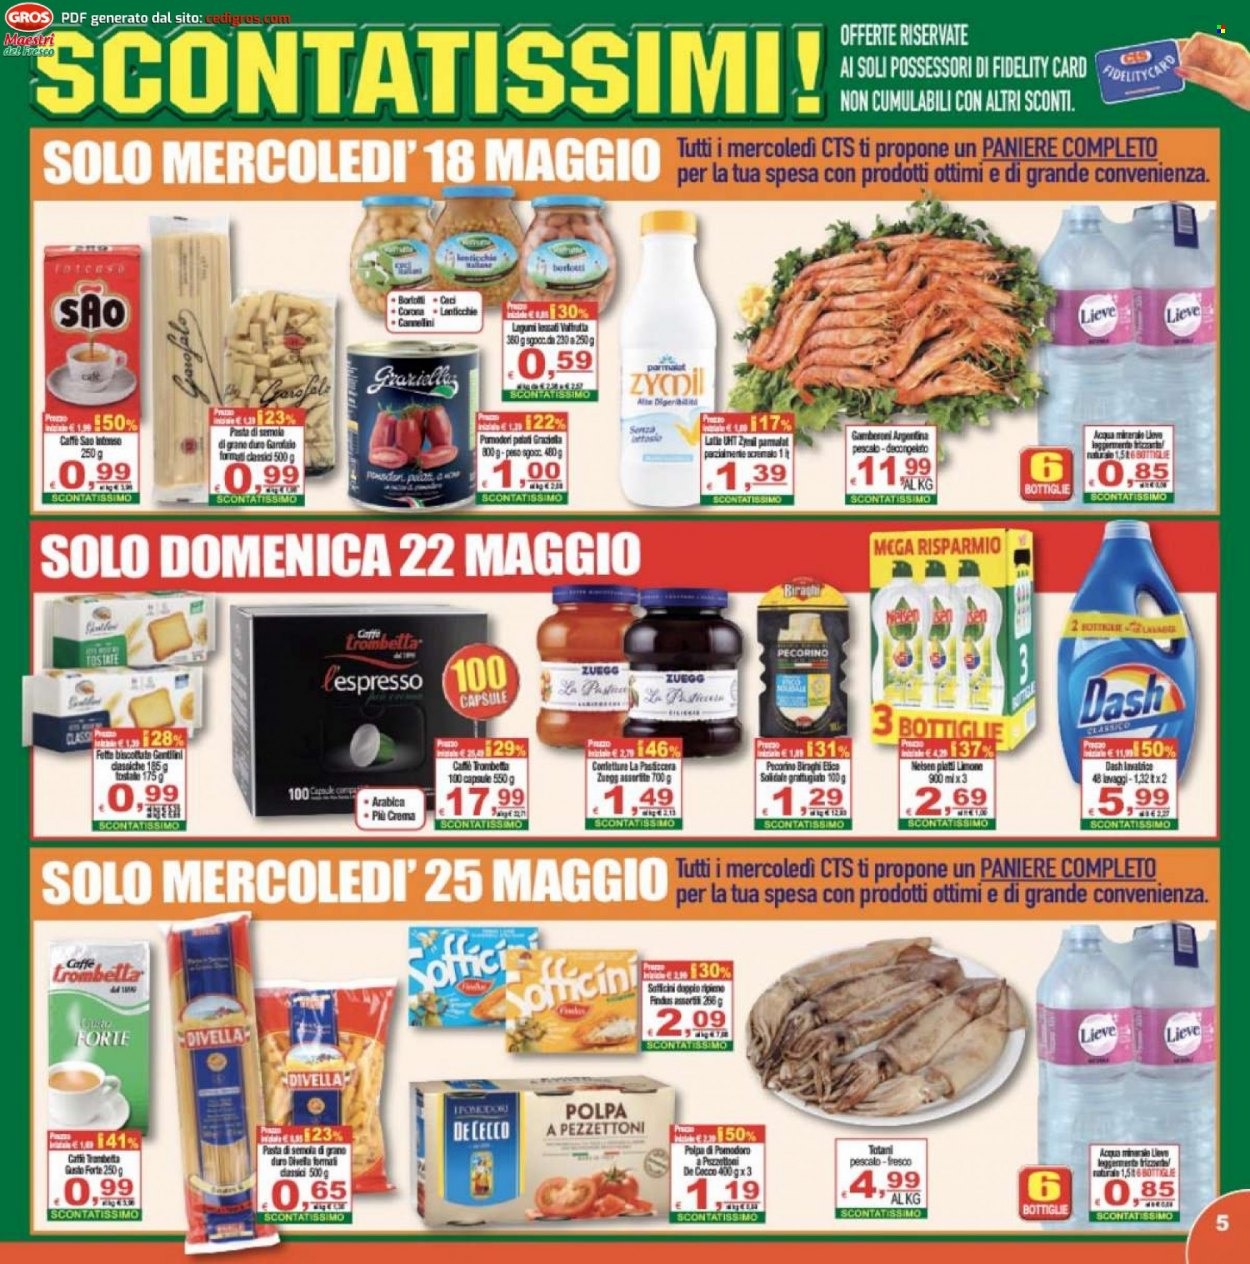 thumbnail - Volantino CTS supermercati - 18/5/2022 - 26/5/2022 - Prodotti in offerta - Divella, totani, gamberoni, formaggio, pecorino, Biraghi, De Cecco, lenticchie, Zuegg, pasta, caffè, Dash. Pagina 5.